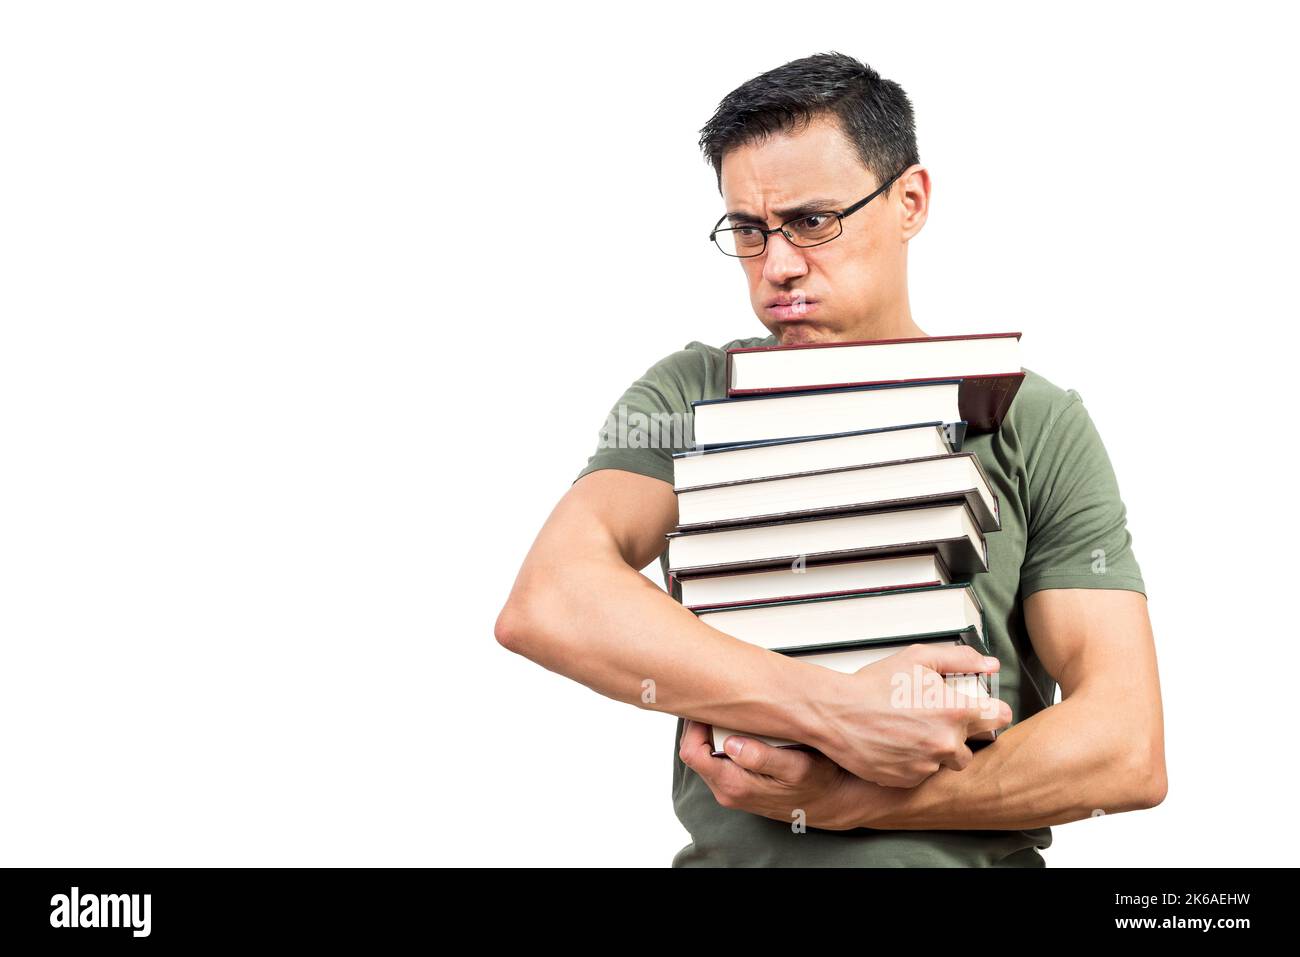 Un étudiant fatigué portant une pile de livres Banque D'Images